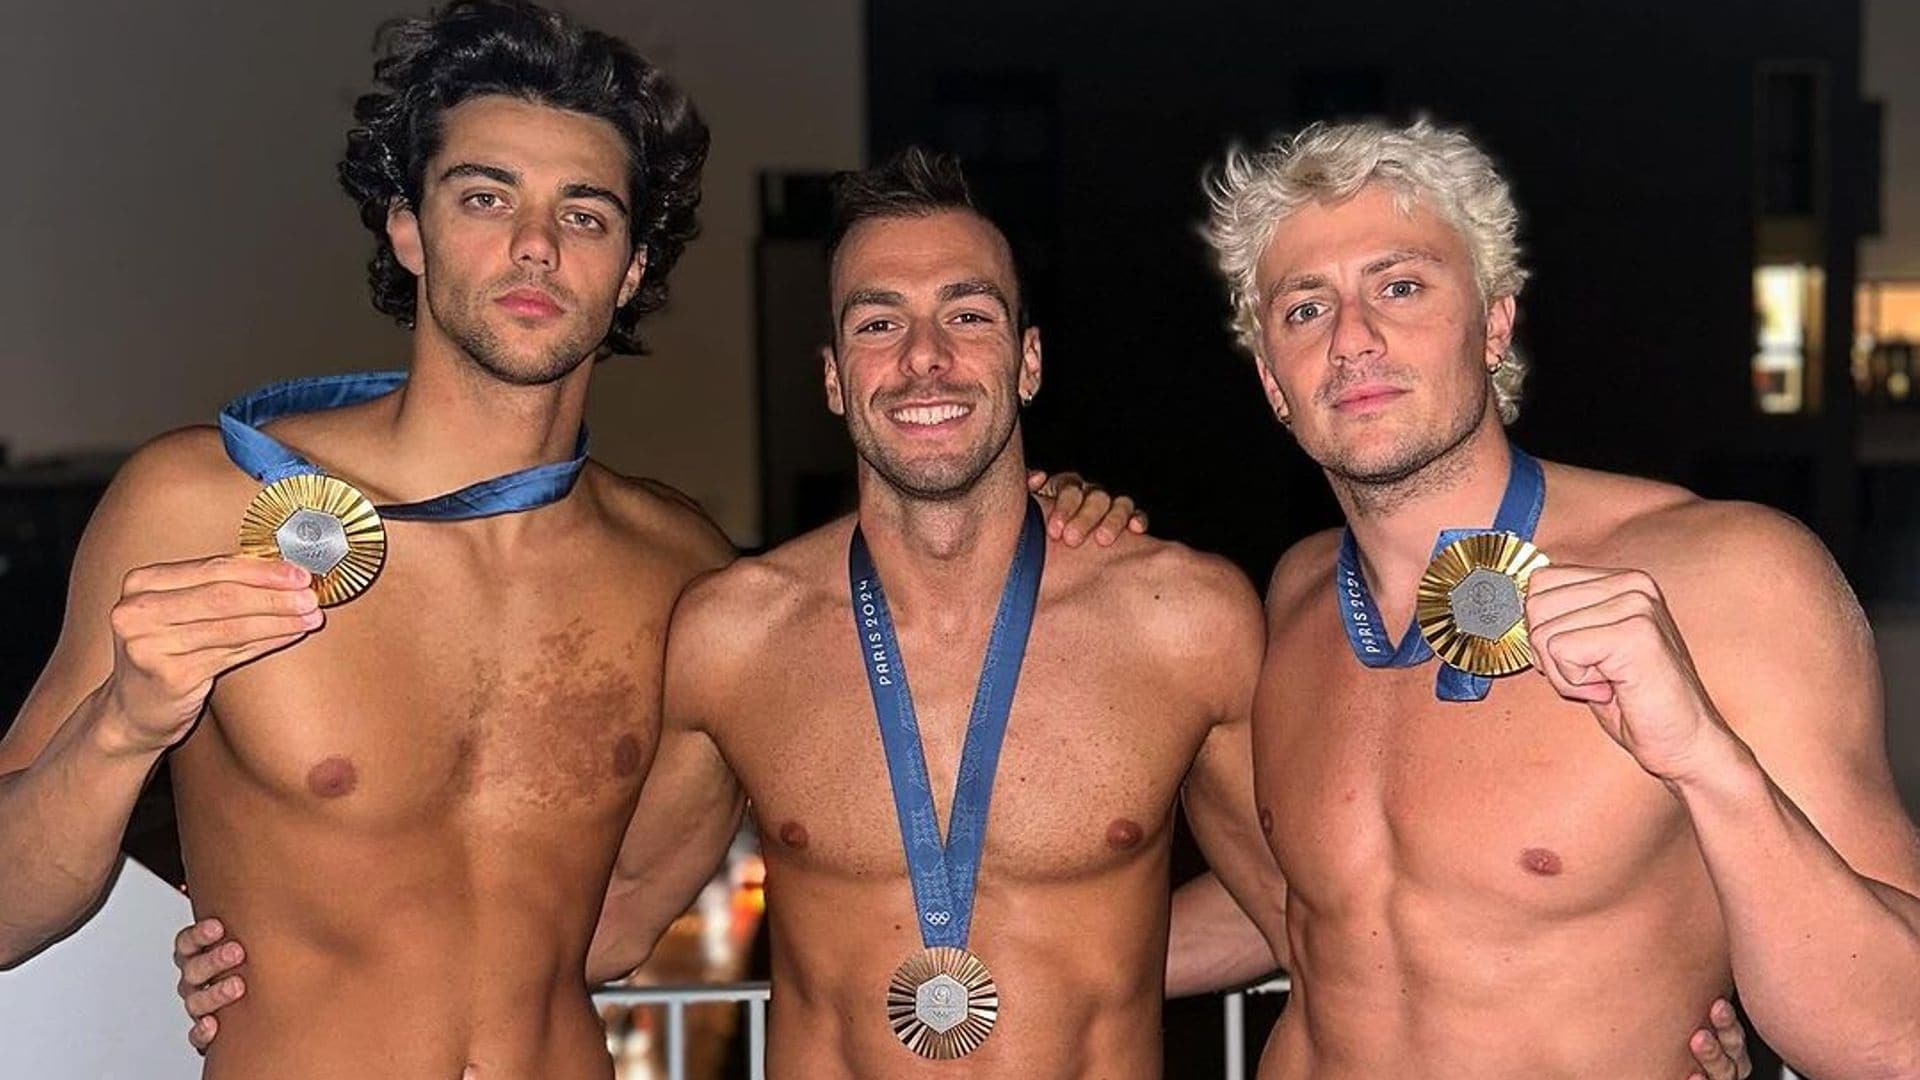 Conoce a los atractivos nadadores italianos que están levantando pasiones y que causan furor en las redes sociales